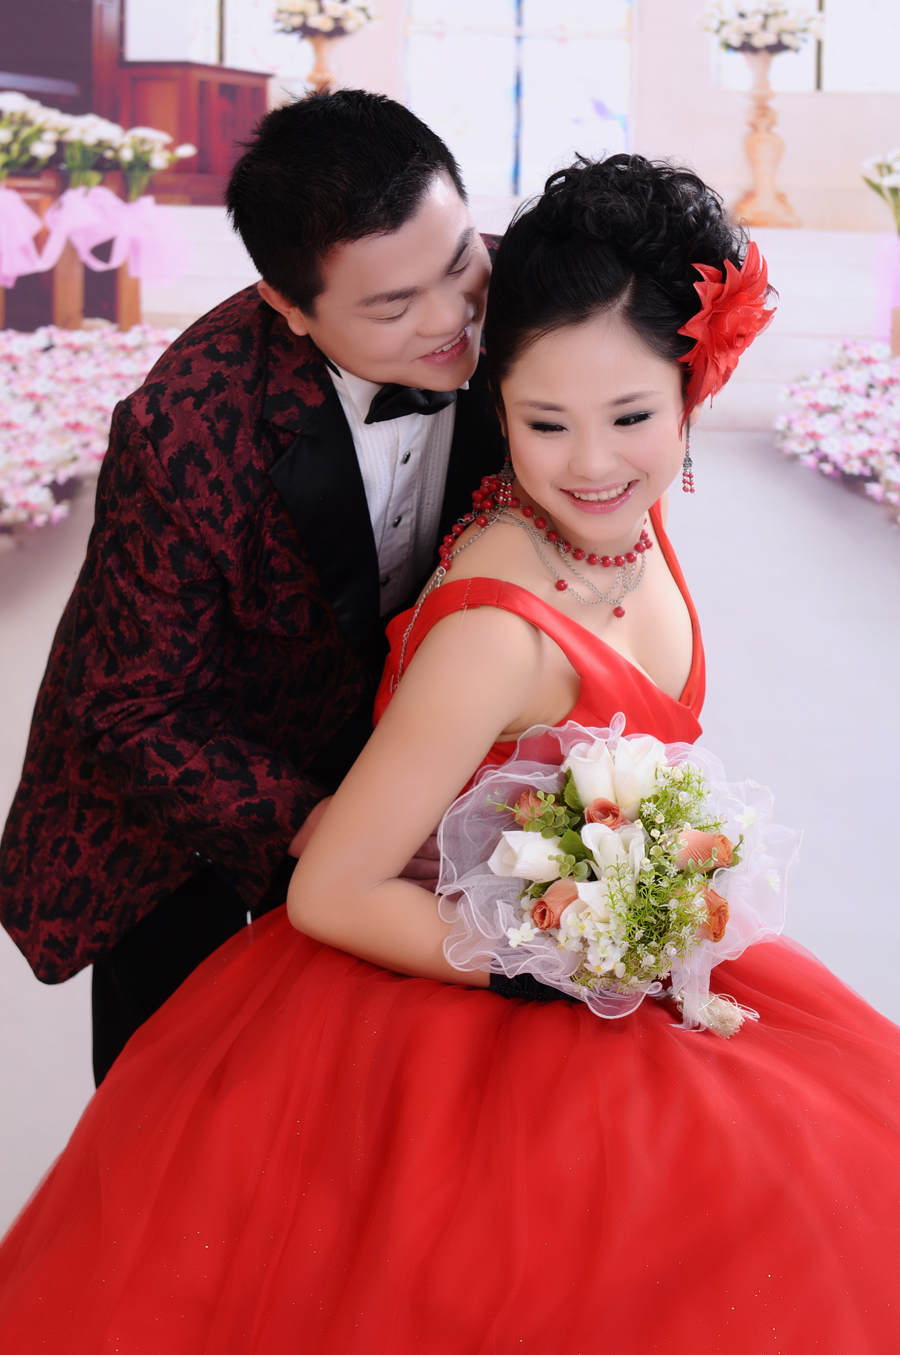 一套我们日常的婚纱照 感谢 叶兆刚 王欢 夫妇2011.3.